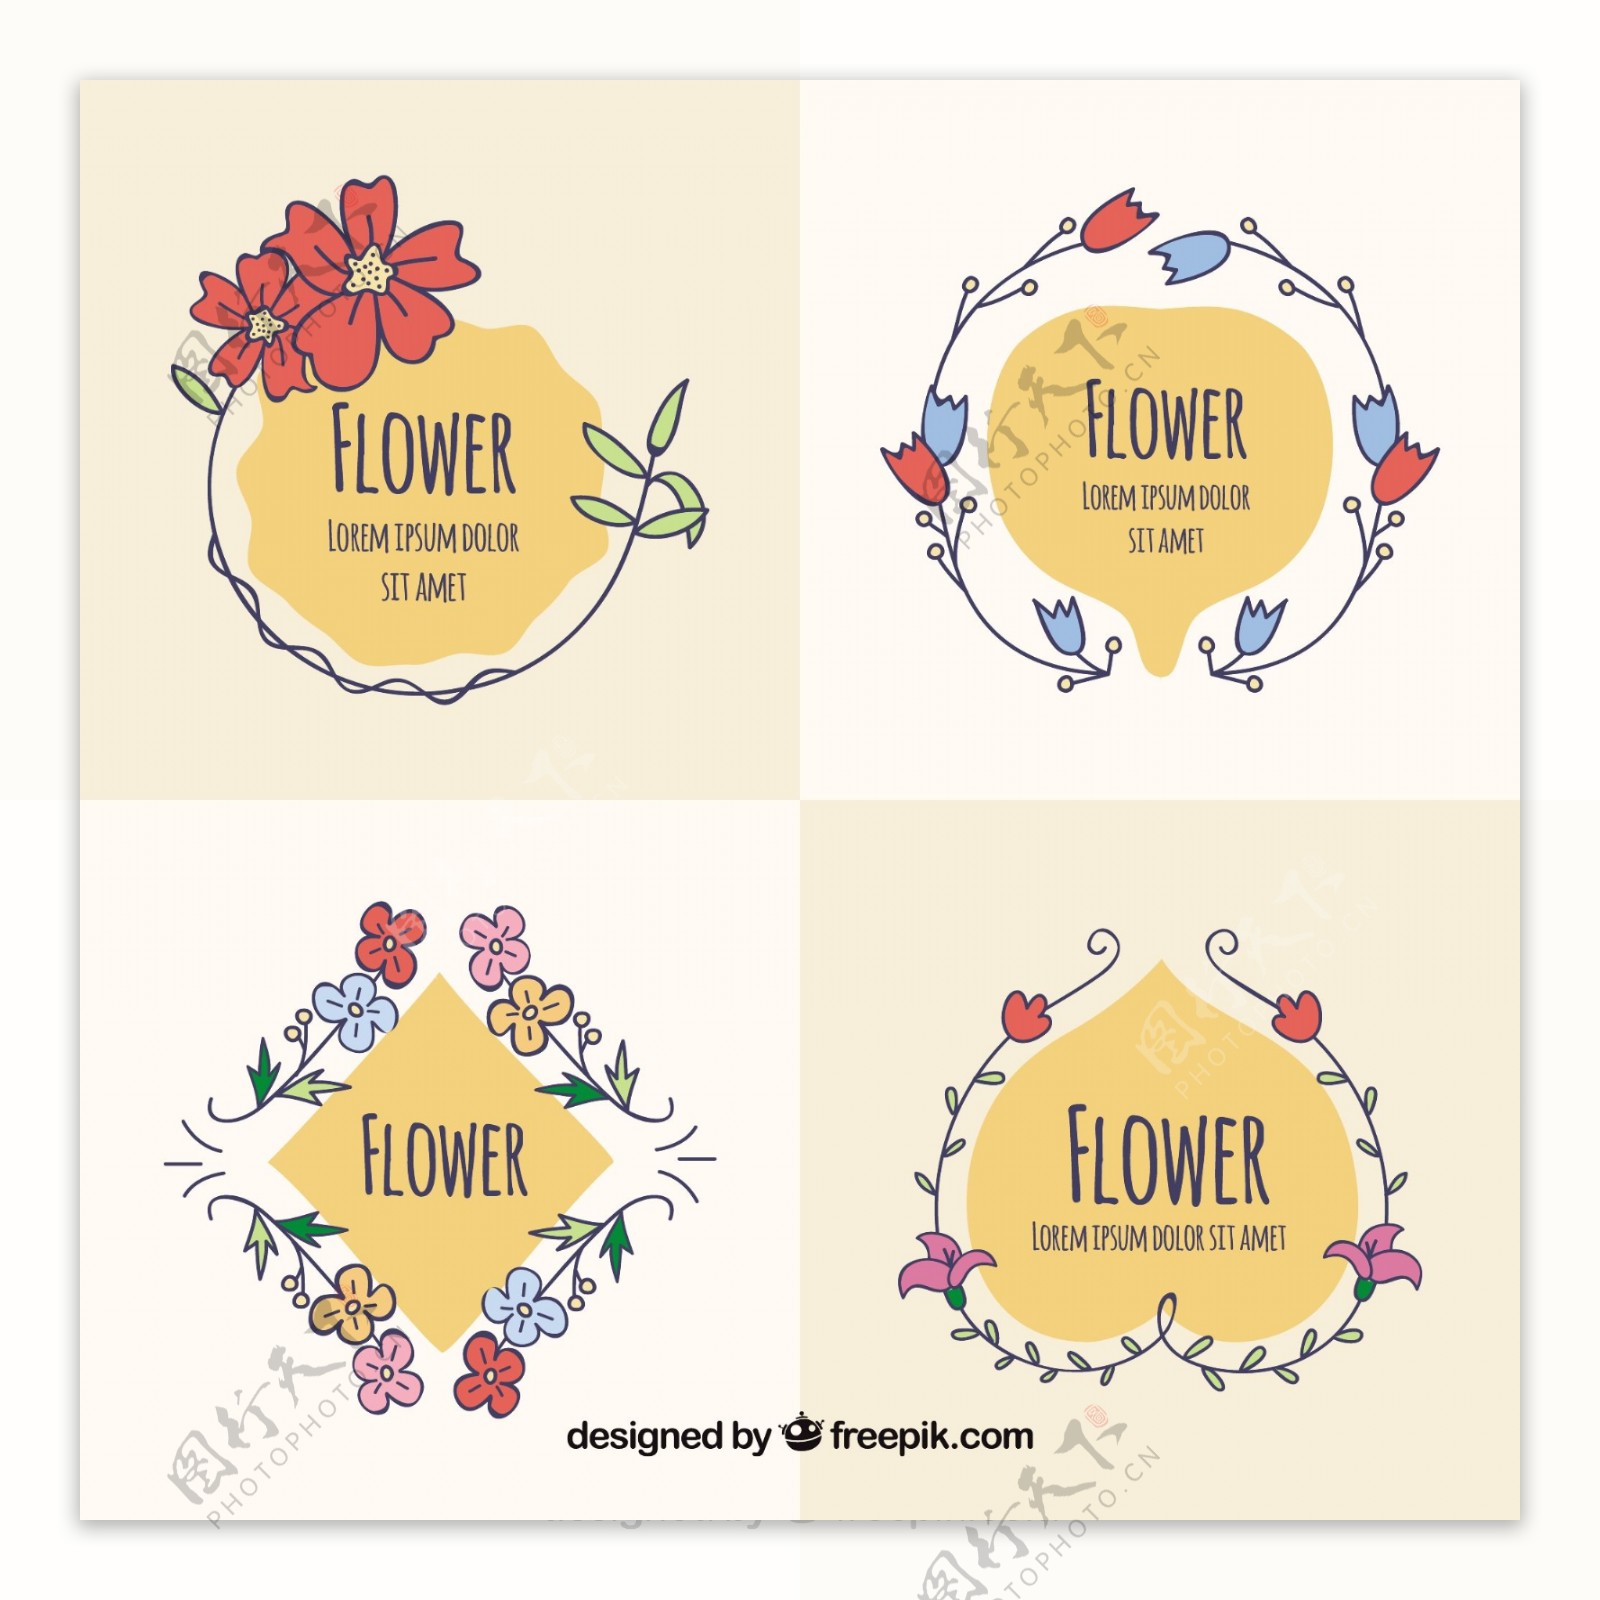 四个手绘花卉标签图标